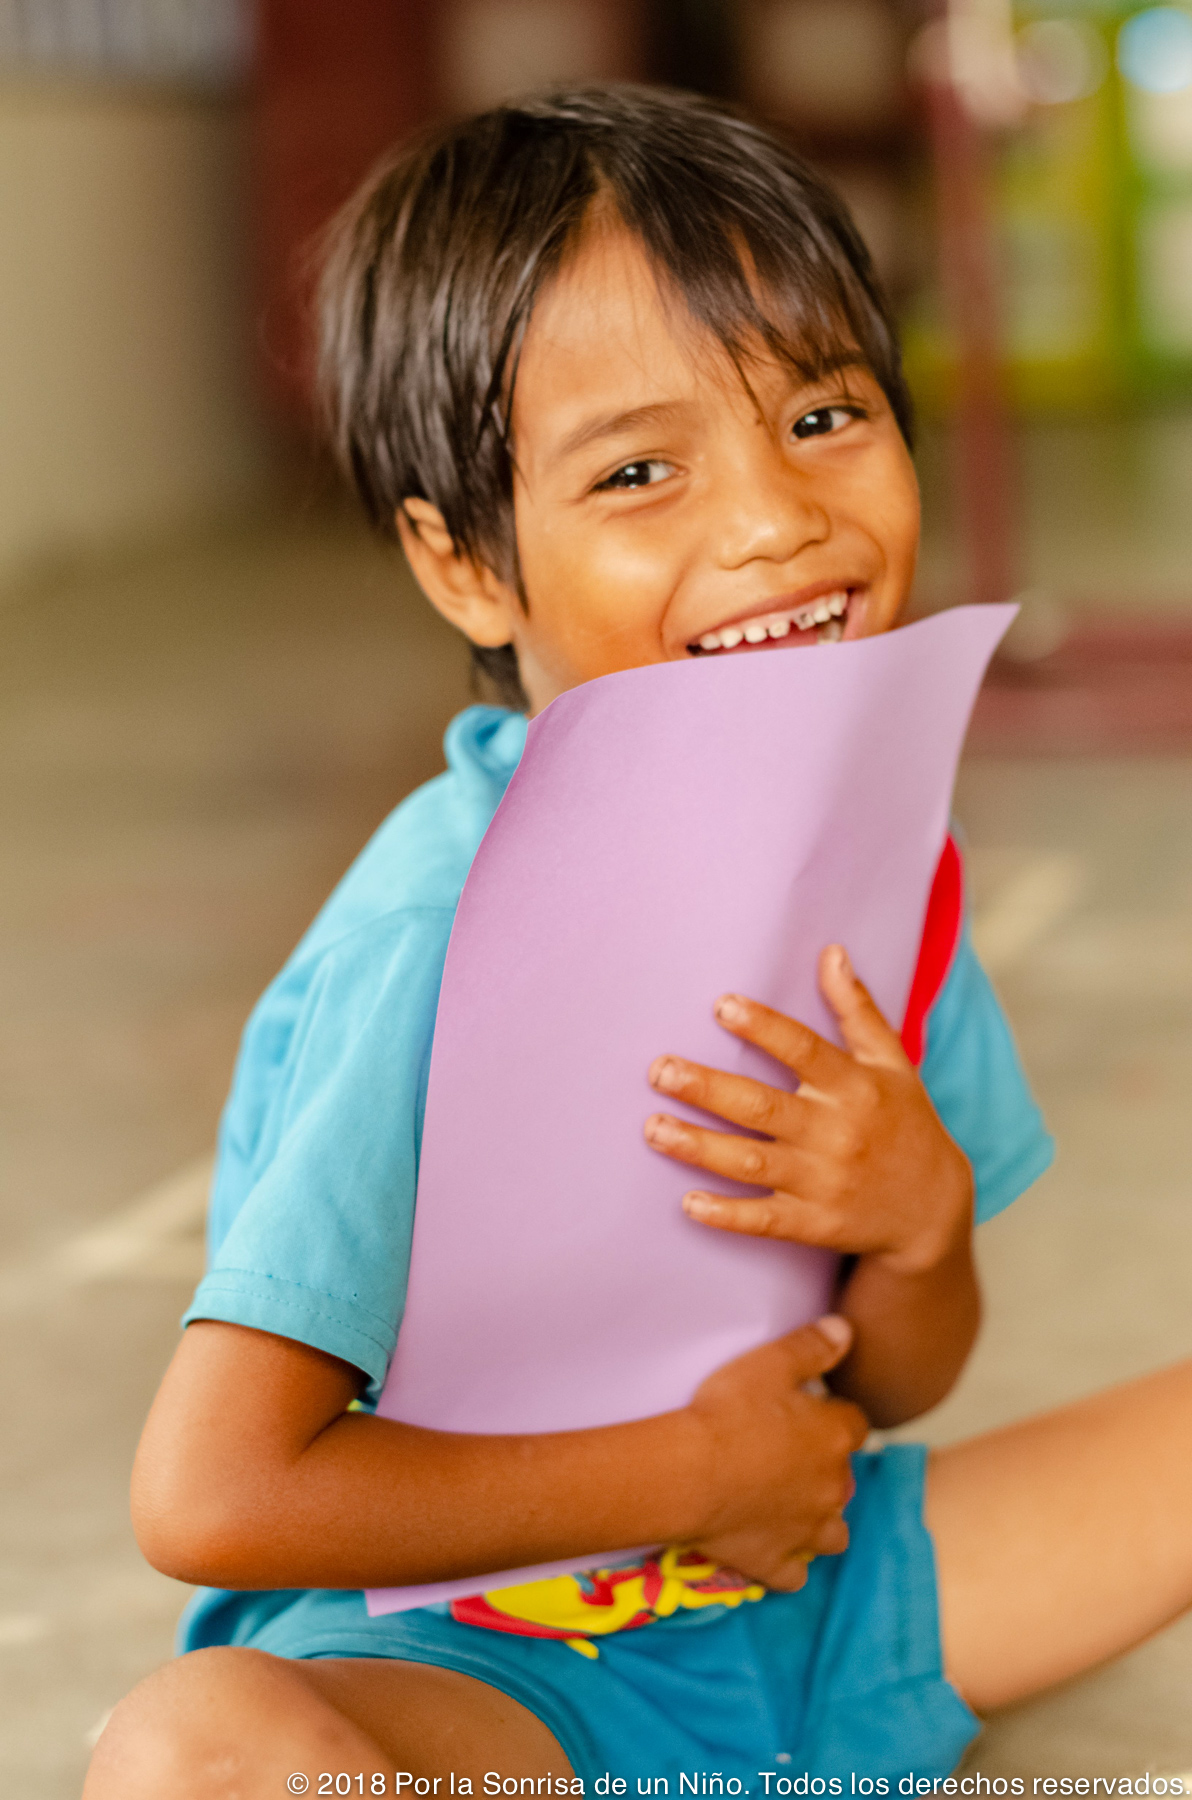 Niño sujetando una hoja de papel